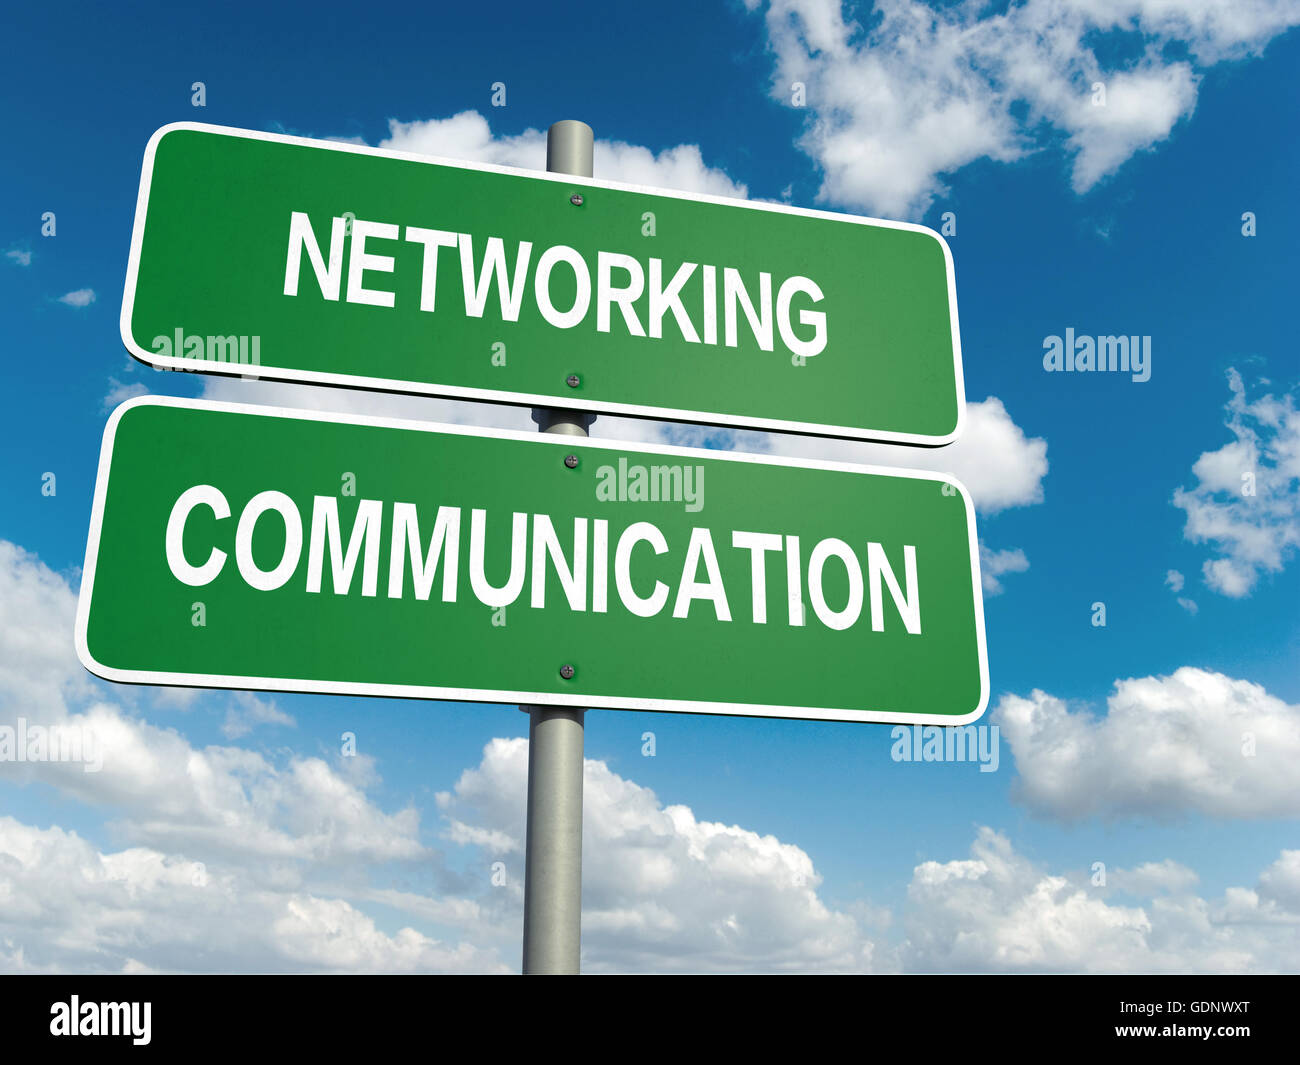 Ein Straßenschild mit Netzwerk-Kommunikation Worte am Himmelshintergrund Stockfoto